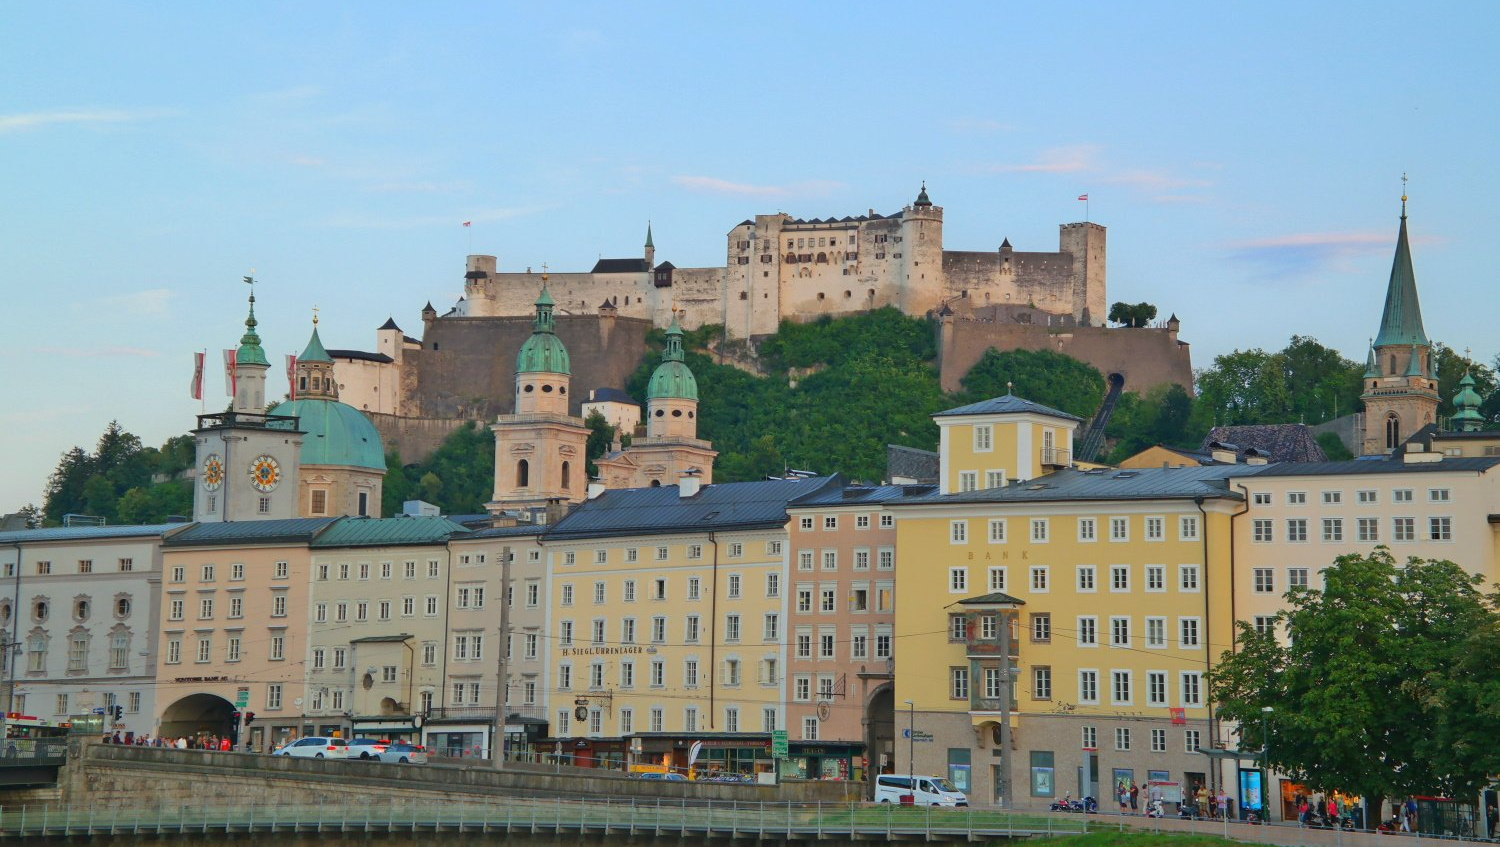 Hohensalzburg in Salzburg